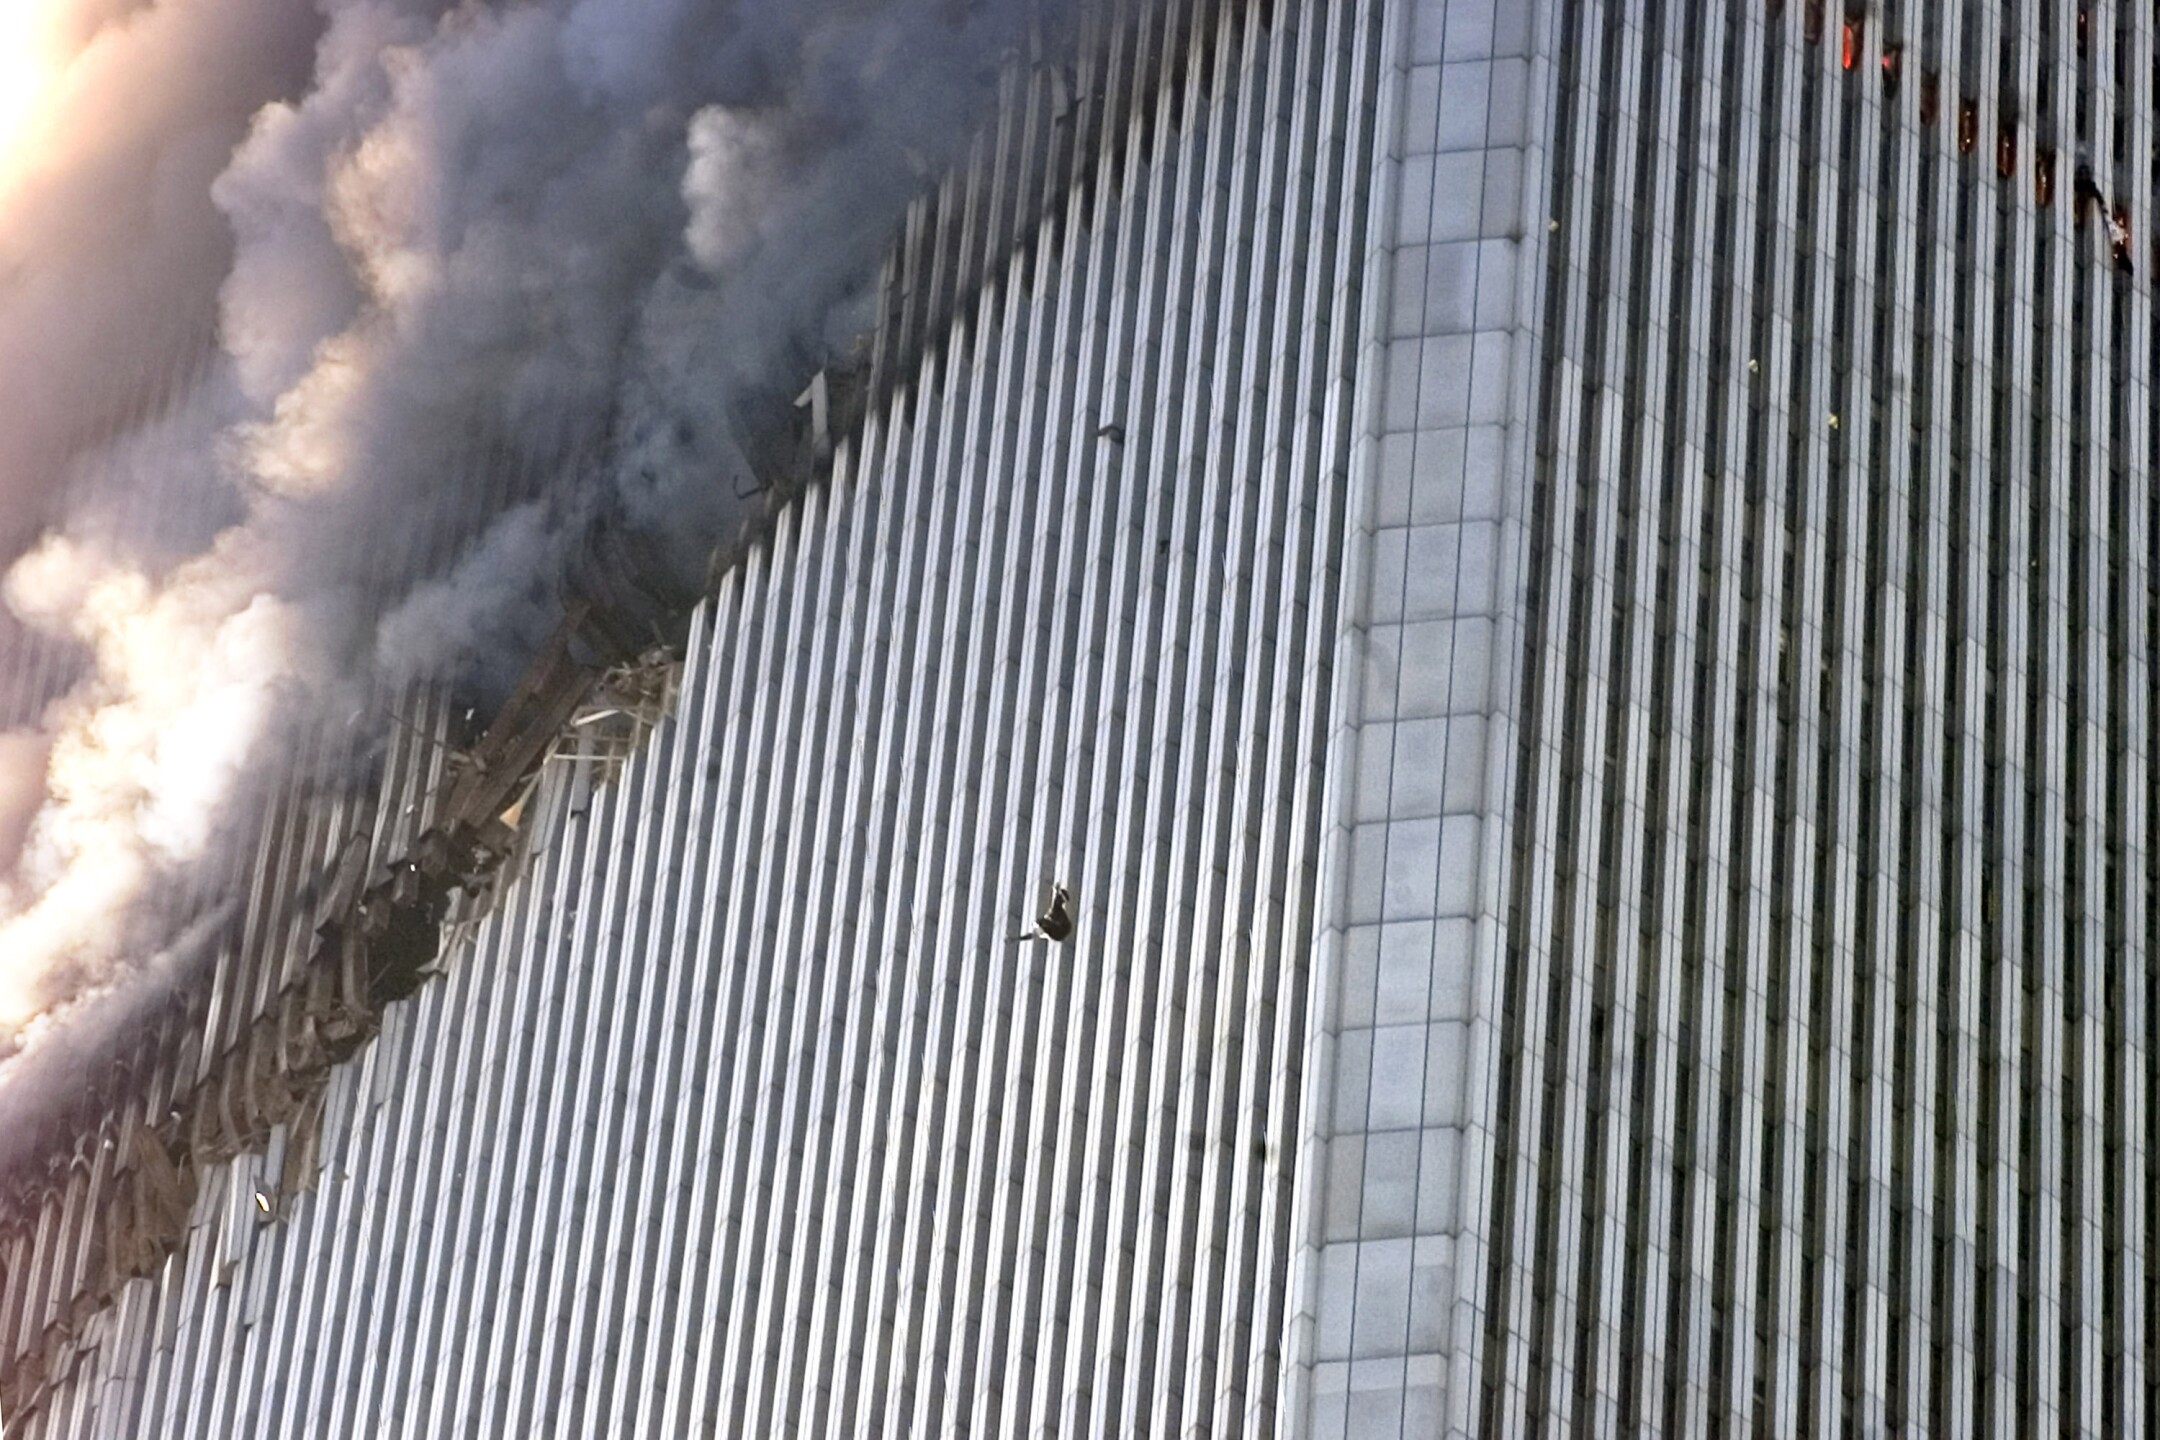 Близнецы сколько этажей. Башни Близнецы 11 сентября. ВТЦ Нью-Йорк башни Близнецы 2001. Всемирный торговый центр в Нью-Йорке 11 сентября.